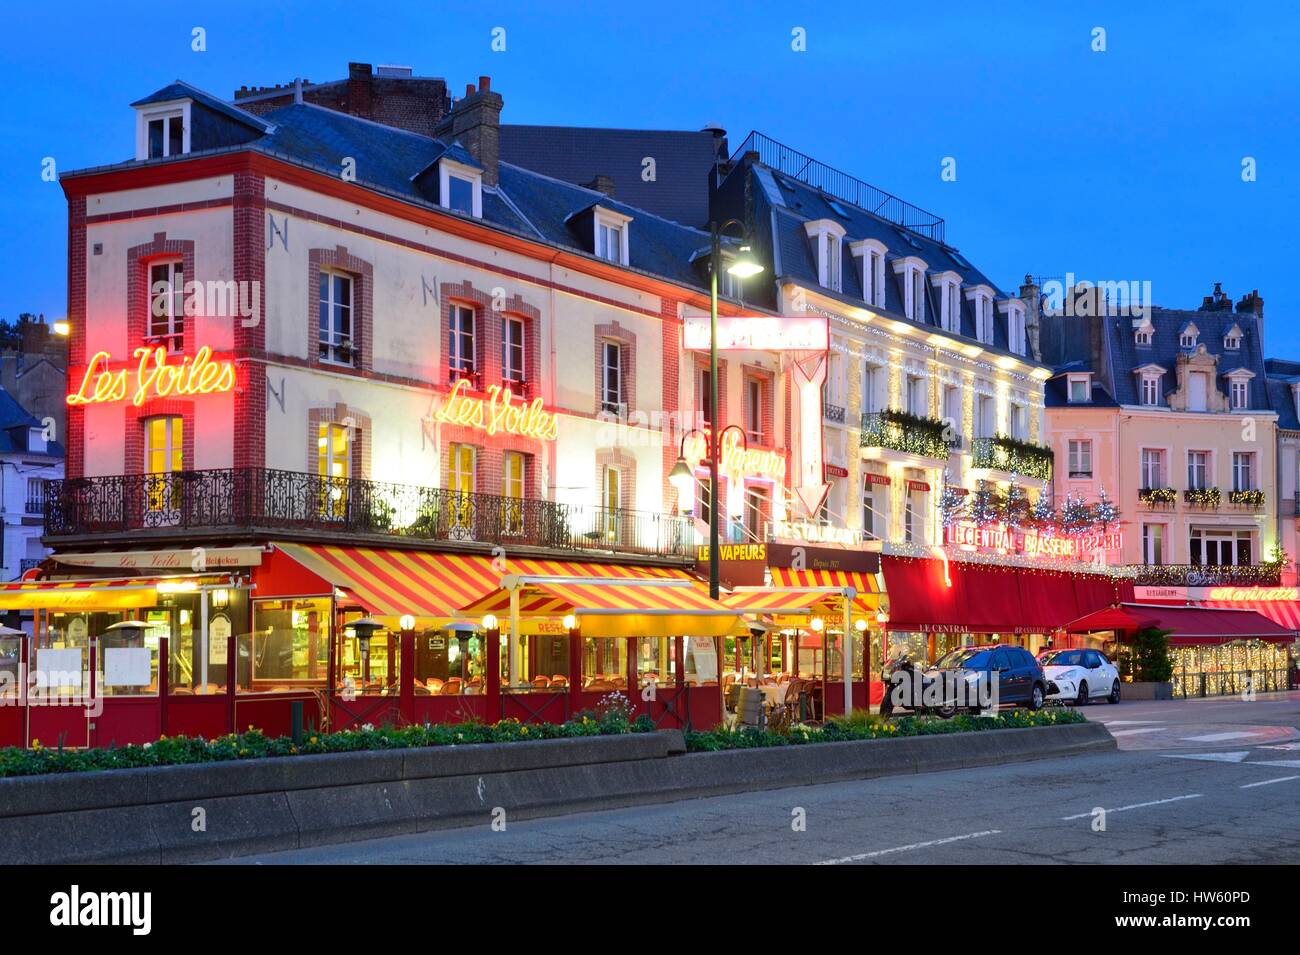 France, Calvados, Trouville sur Mer, Les Vapeurs les Voiles famous brasserie  restaurant Stock Photo - Alamy